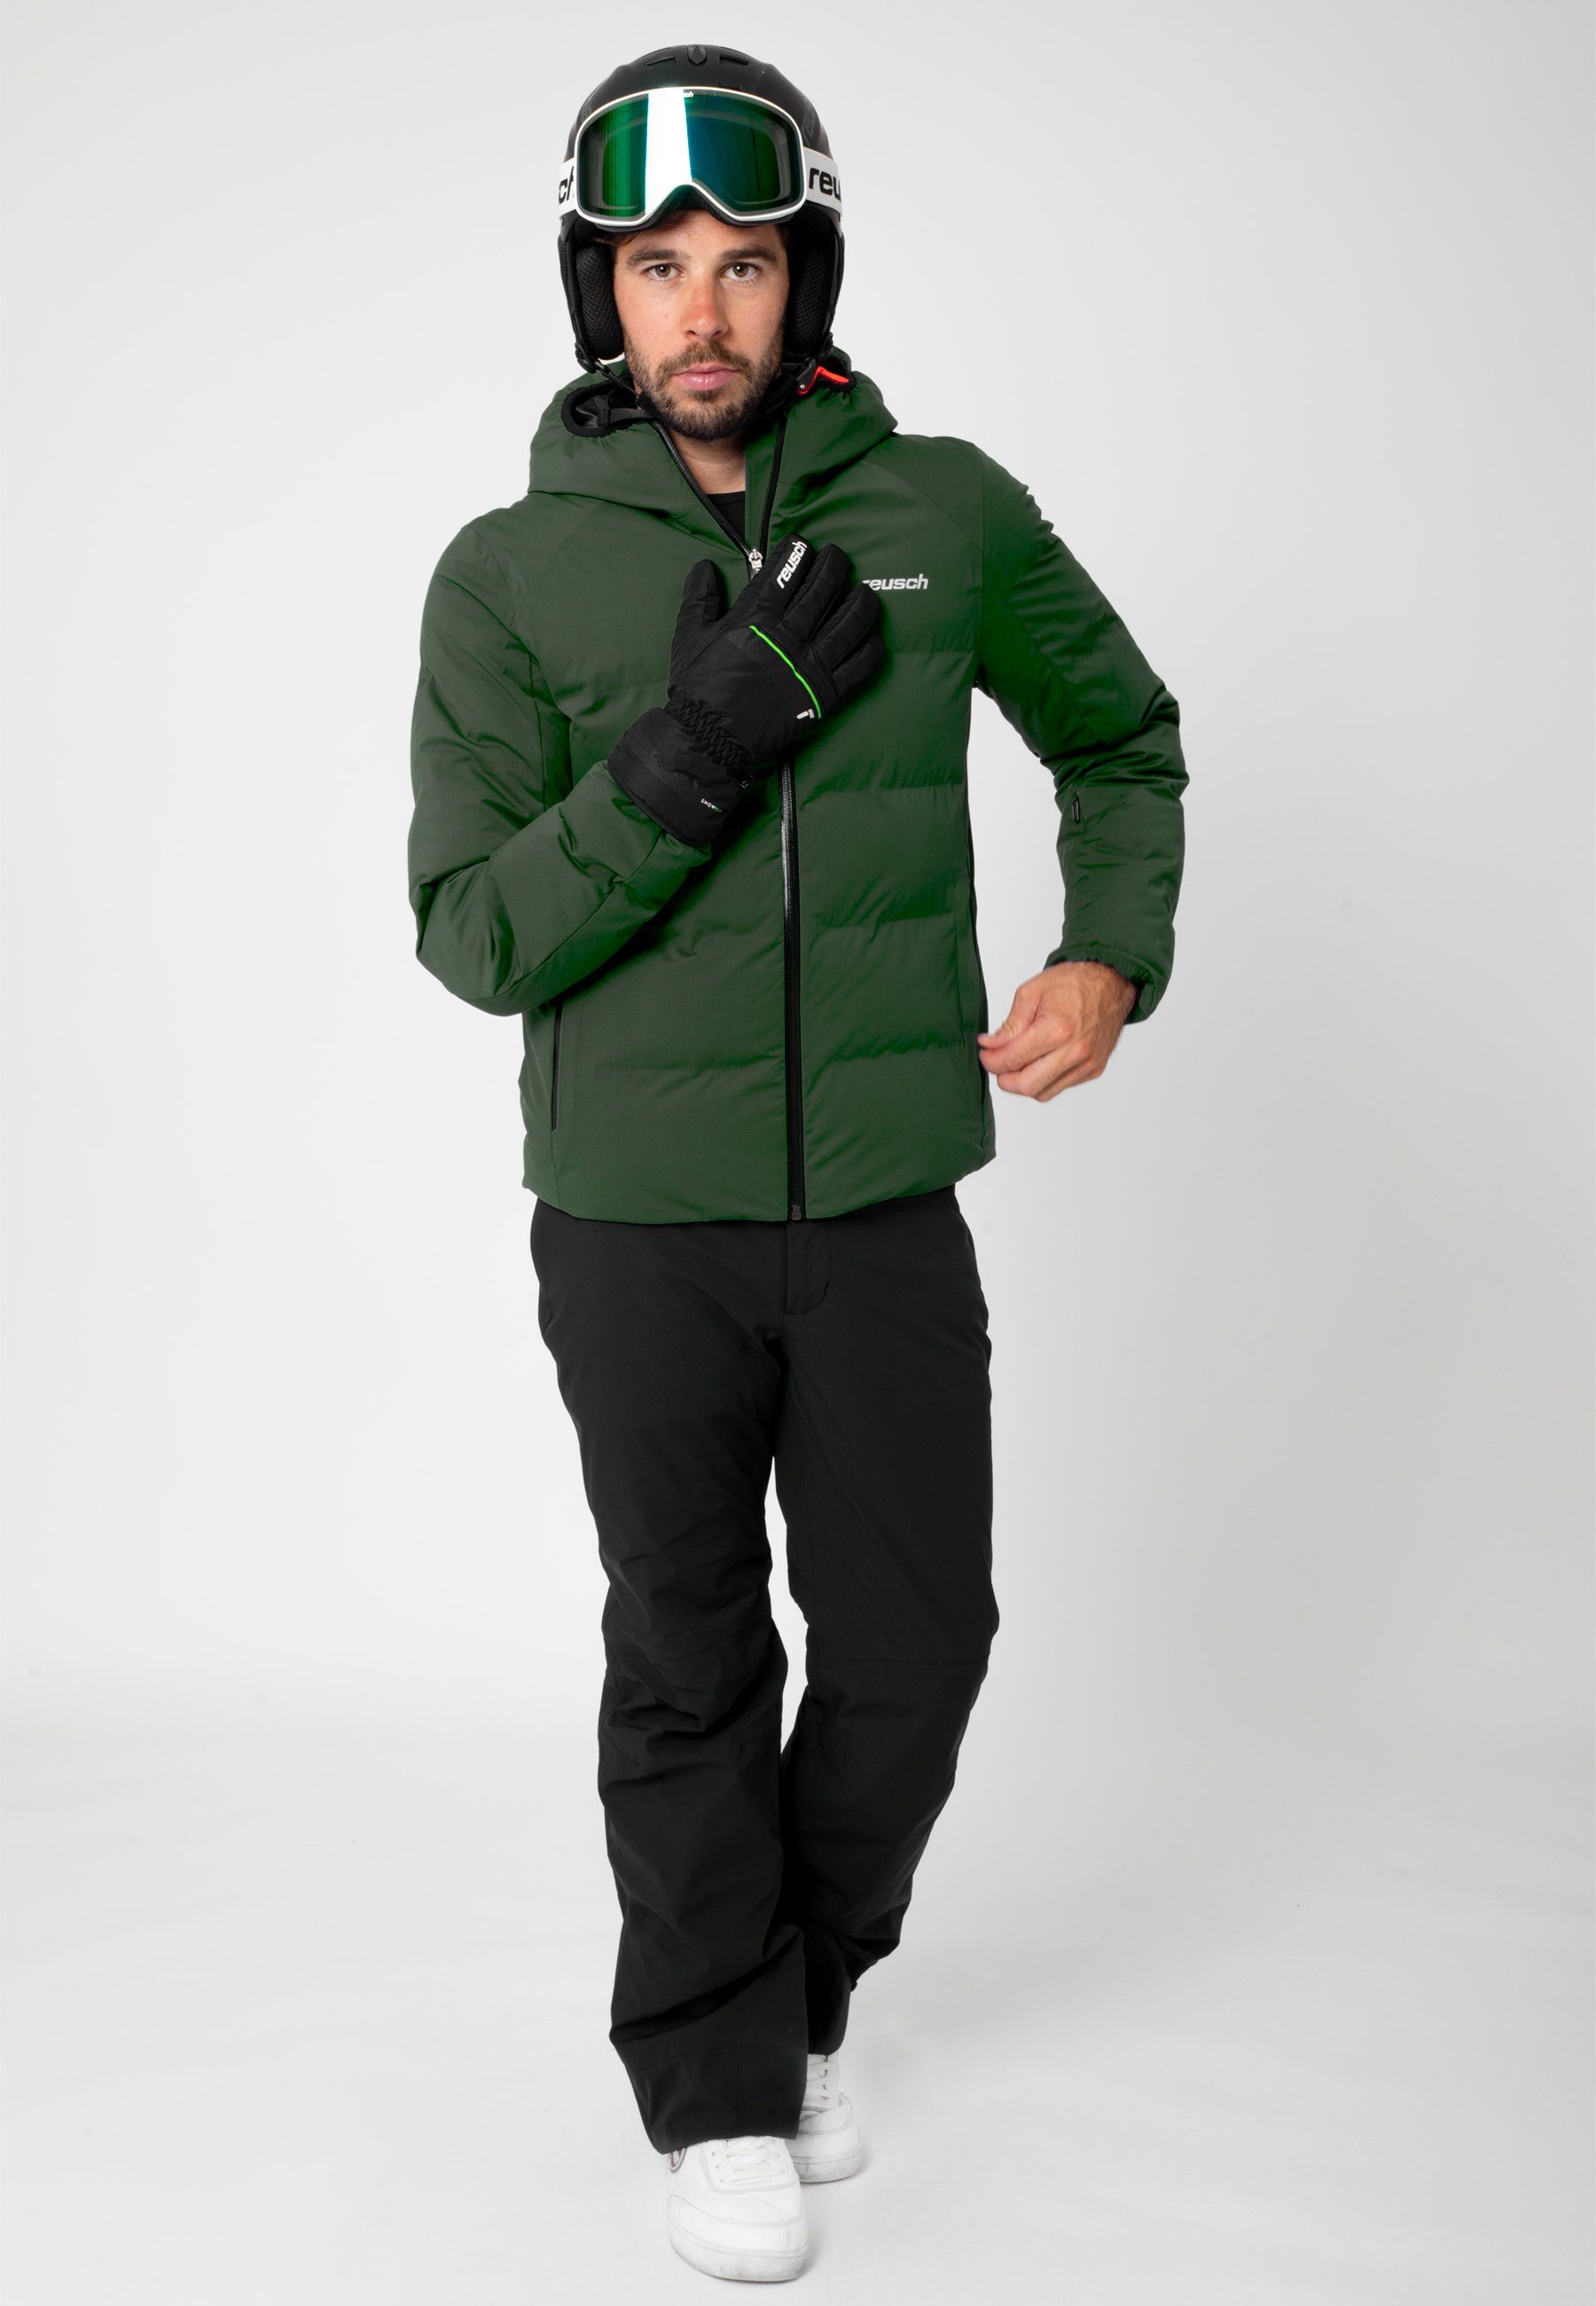 King atmungsaktivem Reusch Skihandschuhe Snow aus grün-schwarz Material